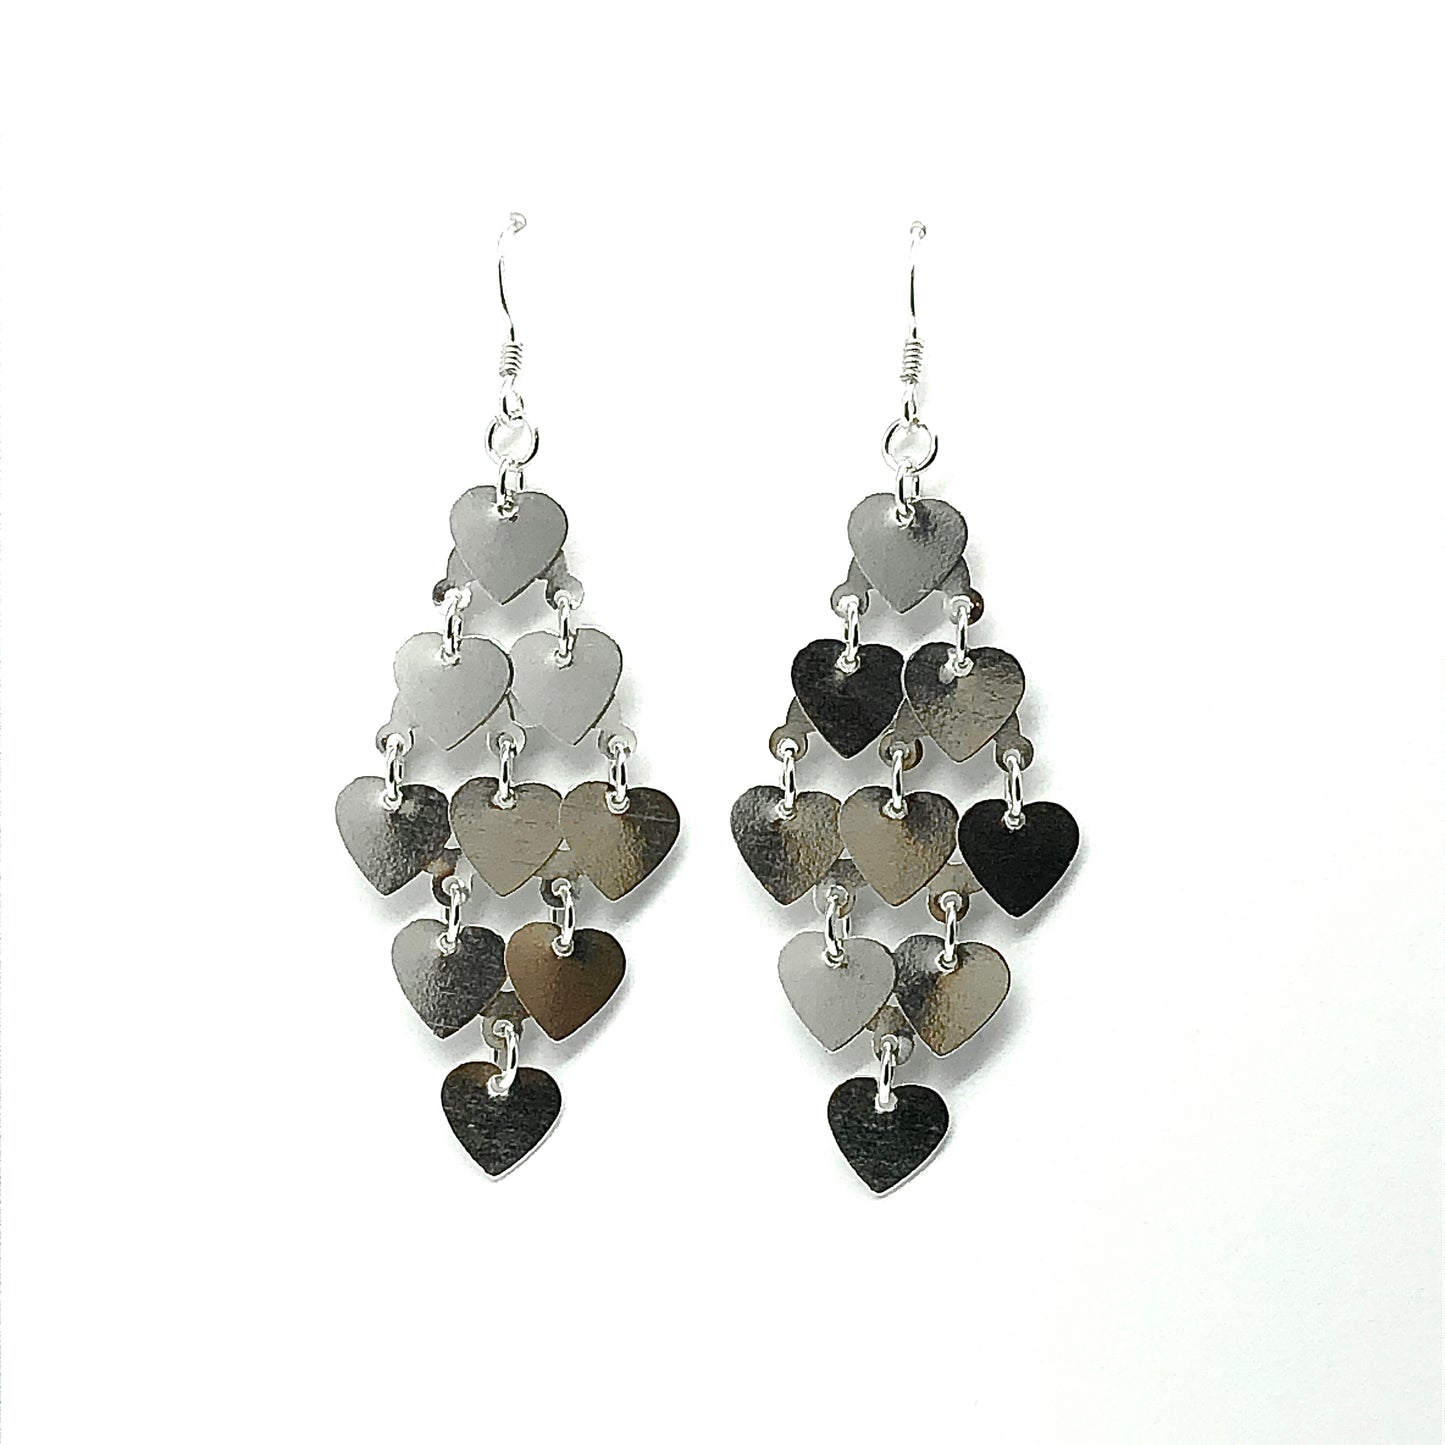 Discount Jewelry online - Womens Sterling Silver 2 5/8in Shimmering Heart Waterfall Style Chandelier Earrings